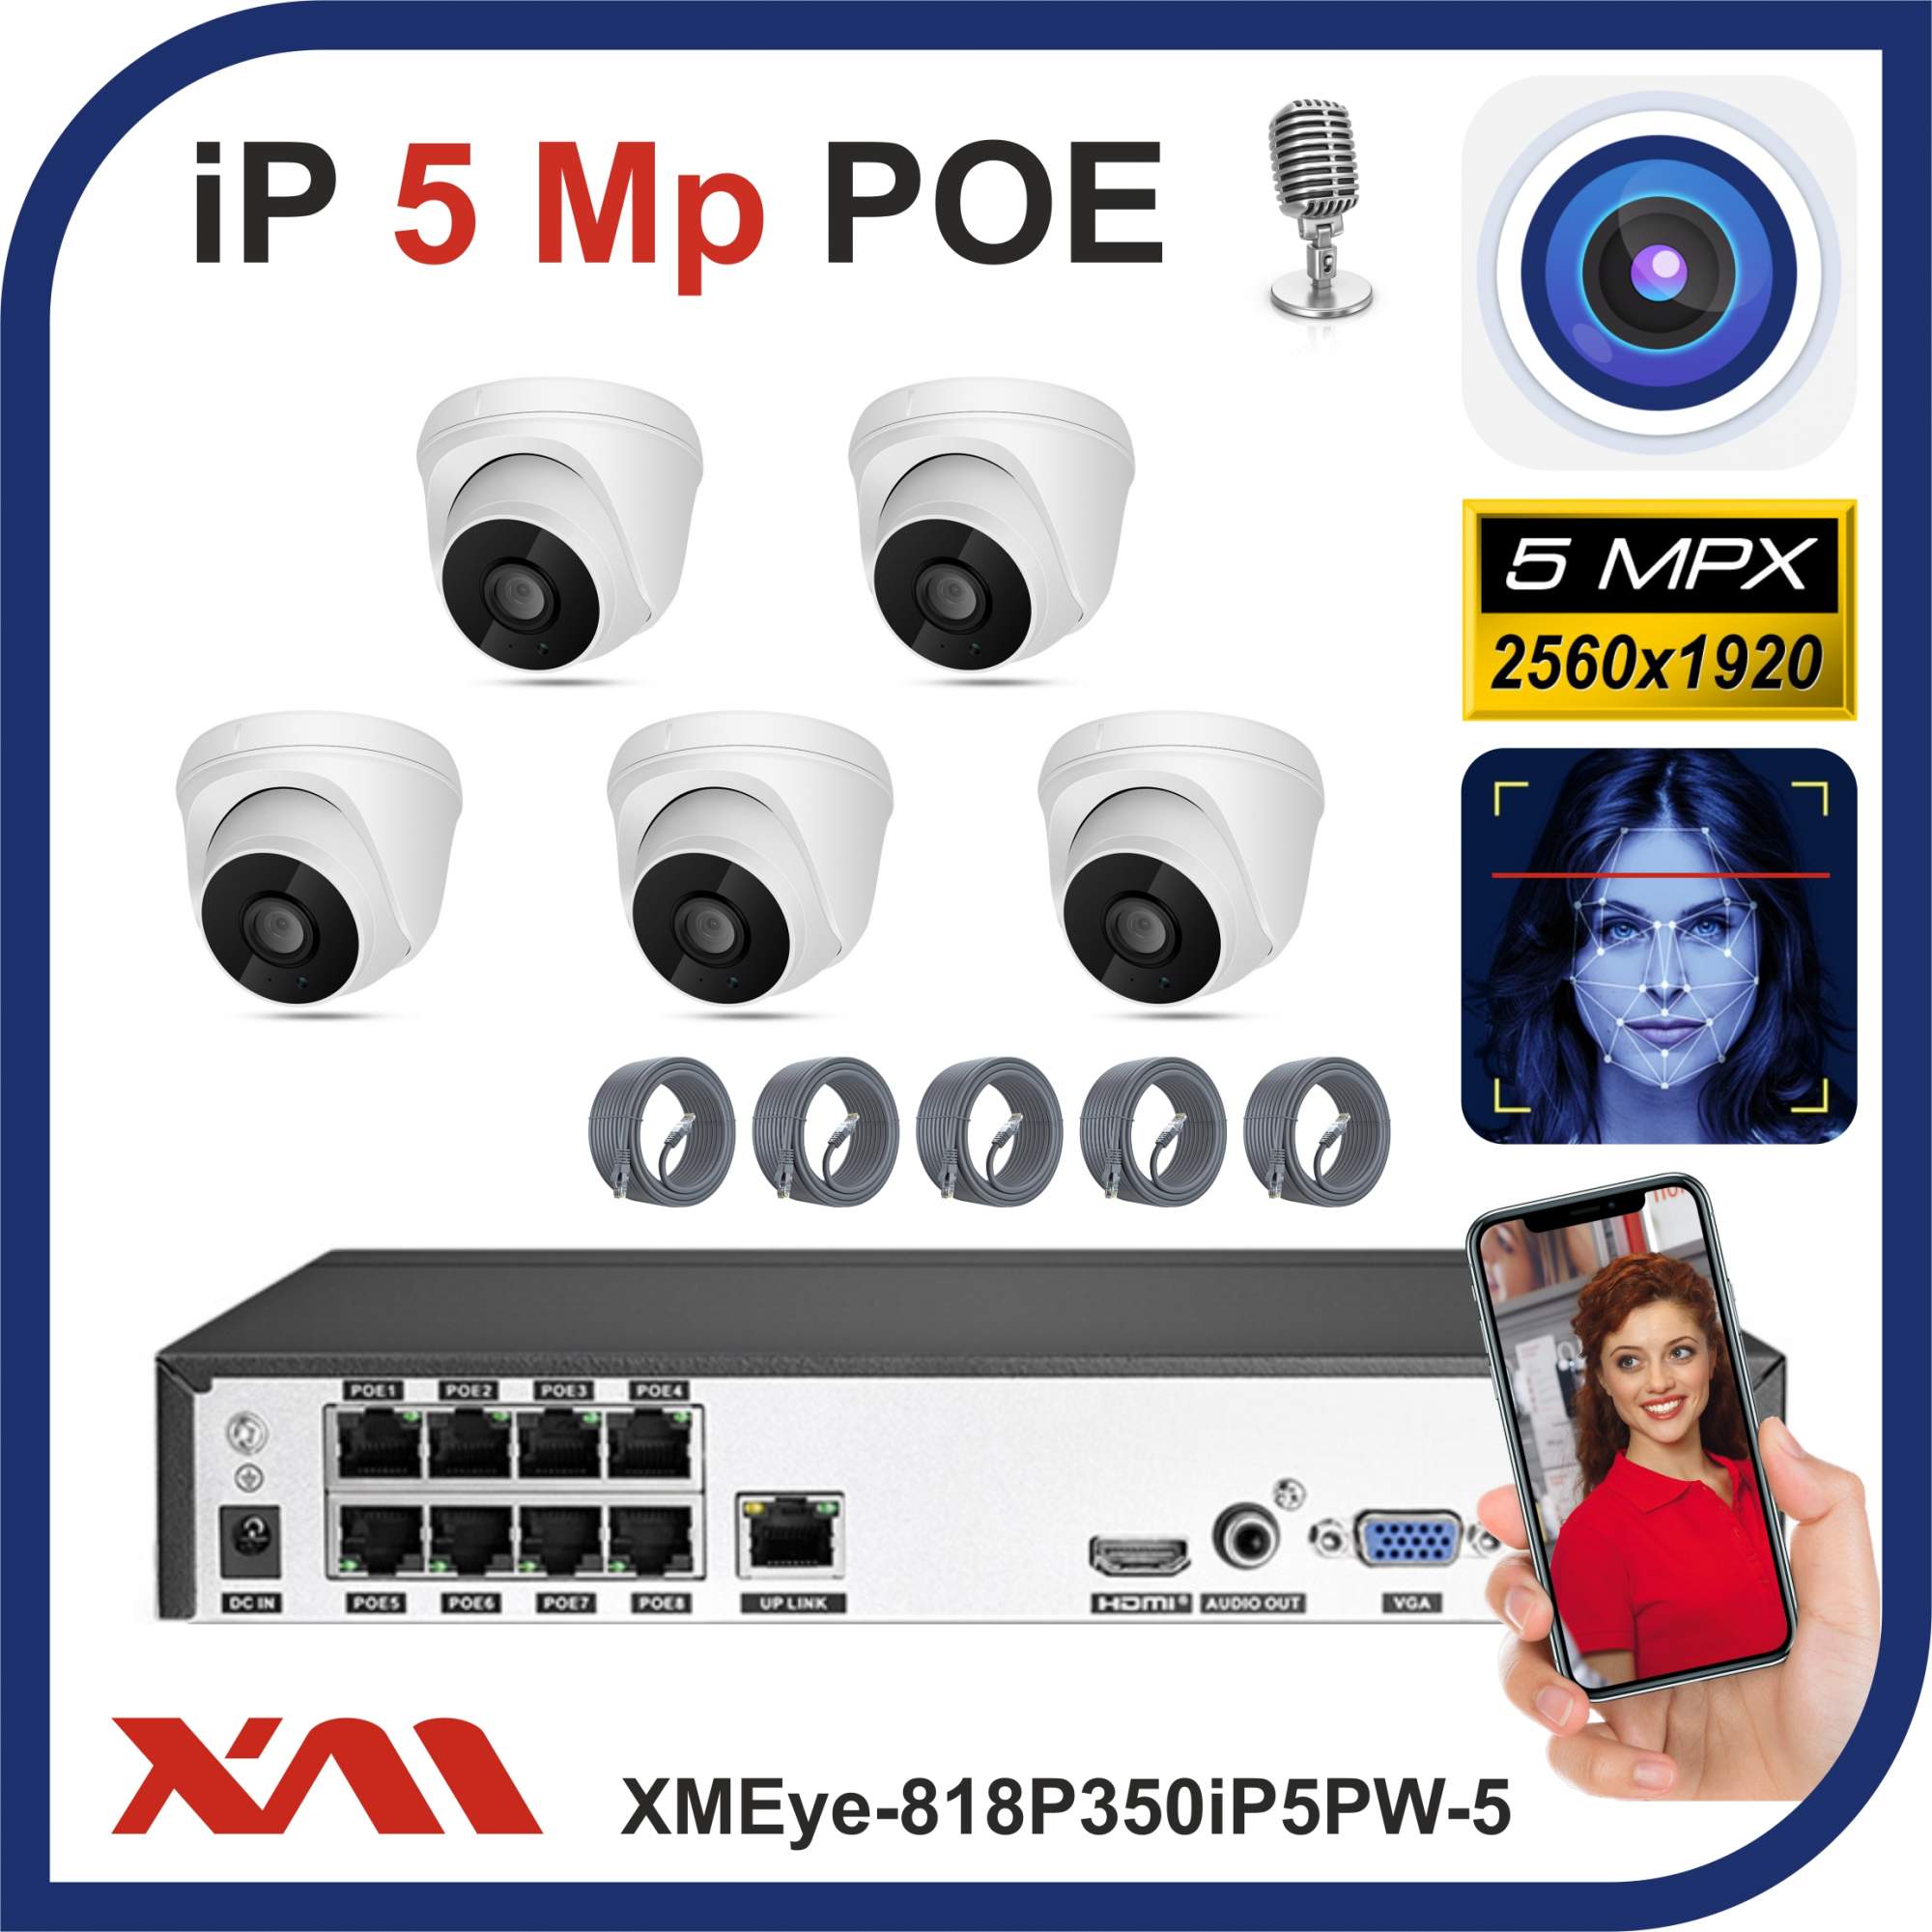 Комплект видеонаблюдения IP POE Xmeye-818P350iP5 на 5 камер с микрофонами, 5 Мегапикселей мышь из натурального меха до 11 см с хвостом белая